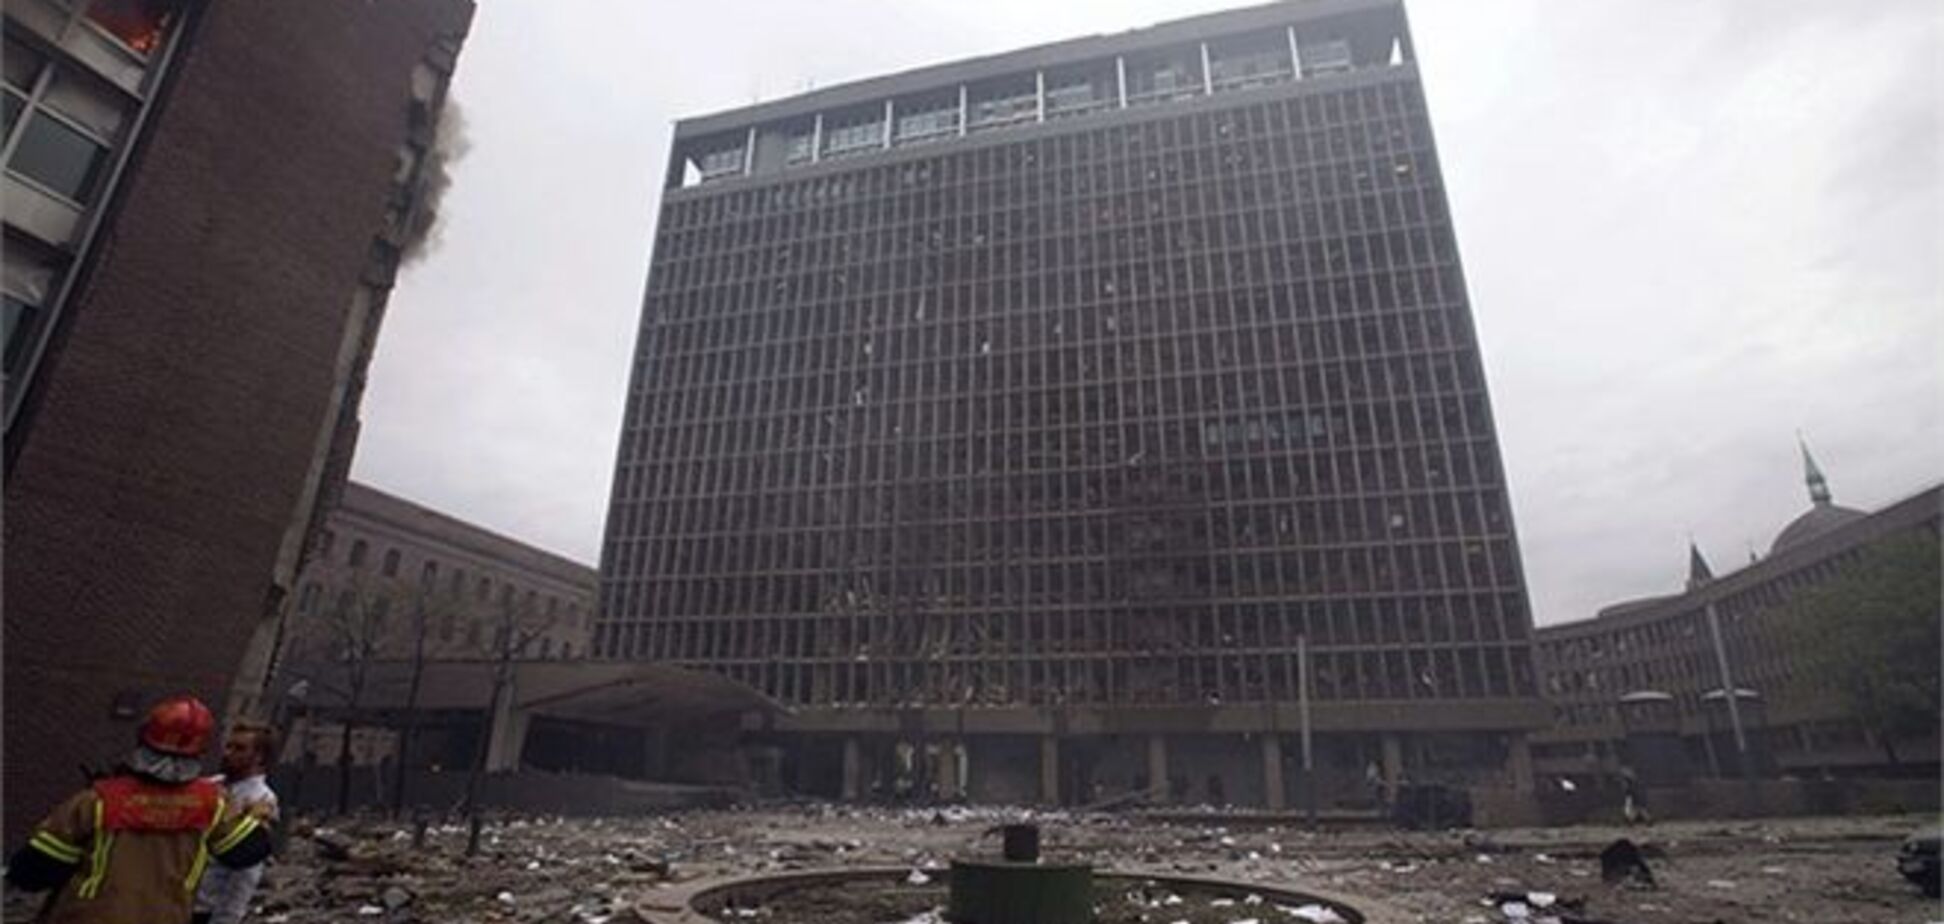 Будівля, пошкоджене під час теракту Брейвіка, хочуть зберегти